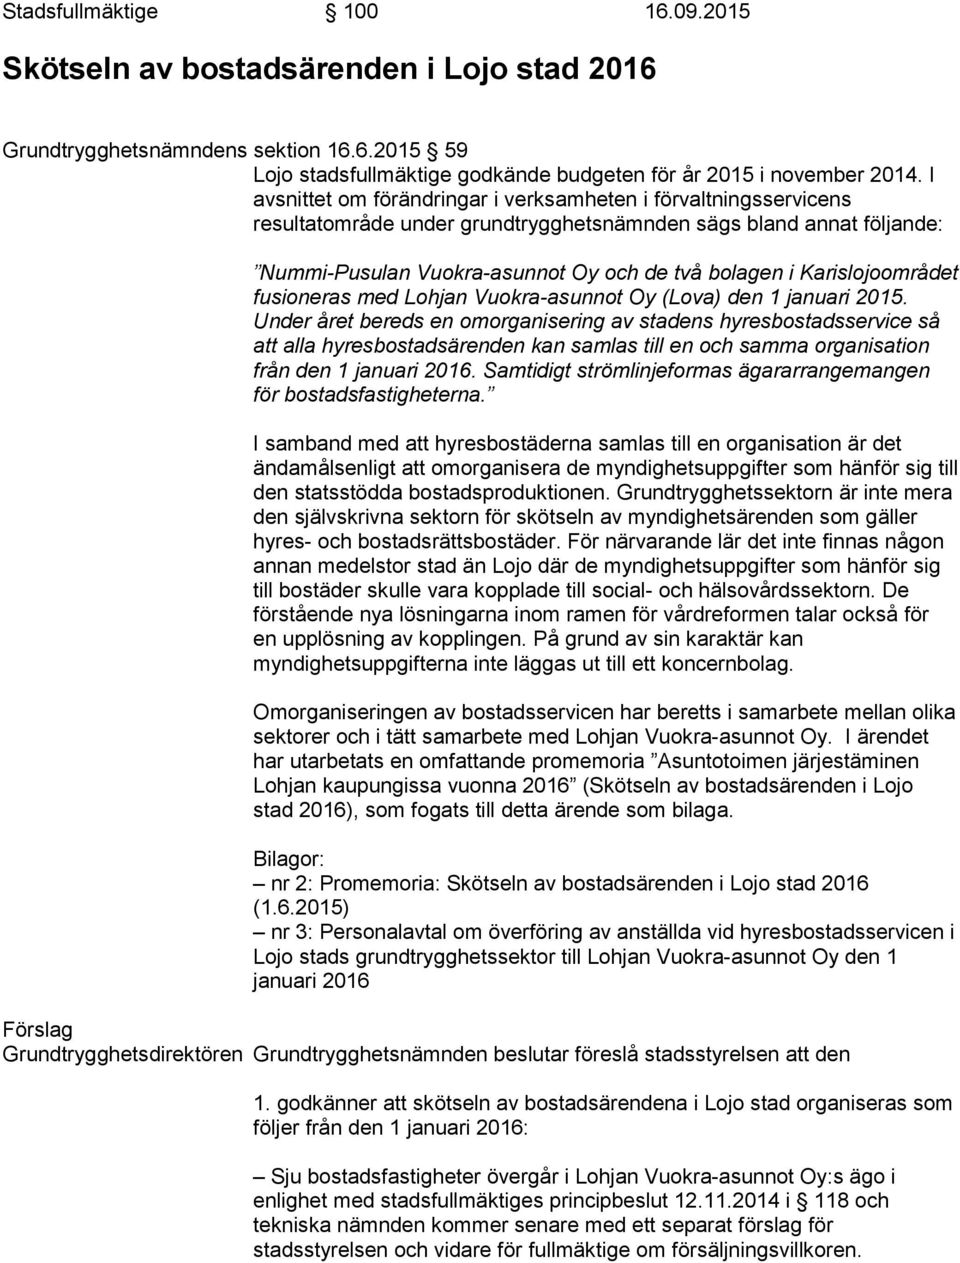 Karislojoområdet fusioneras med Lohjan Vuokra-asunnot Oy (Lova) den 1 januari 2015.